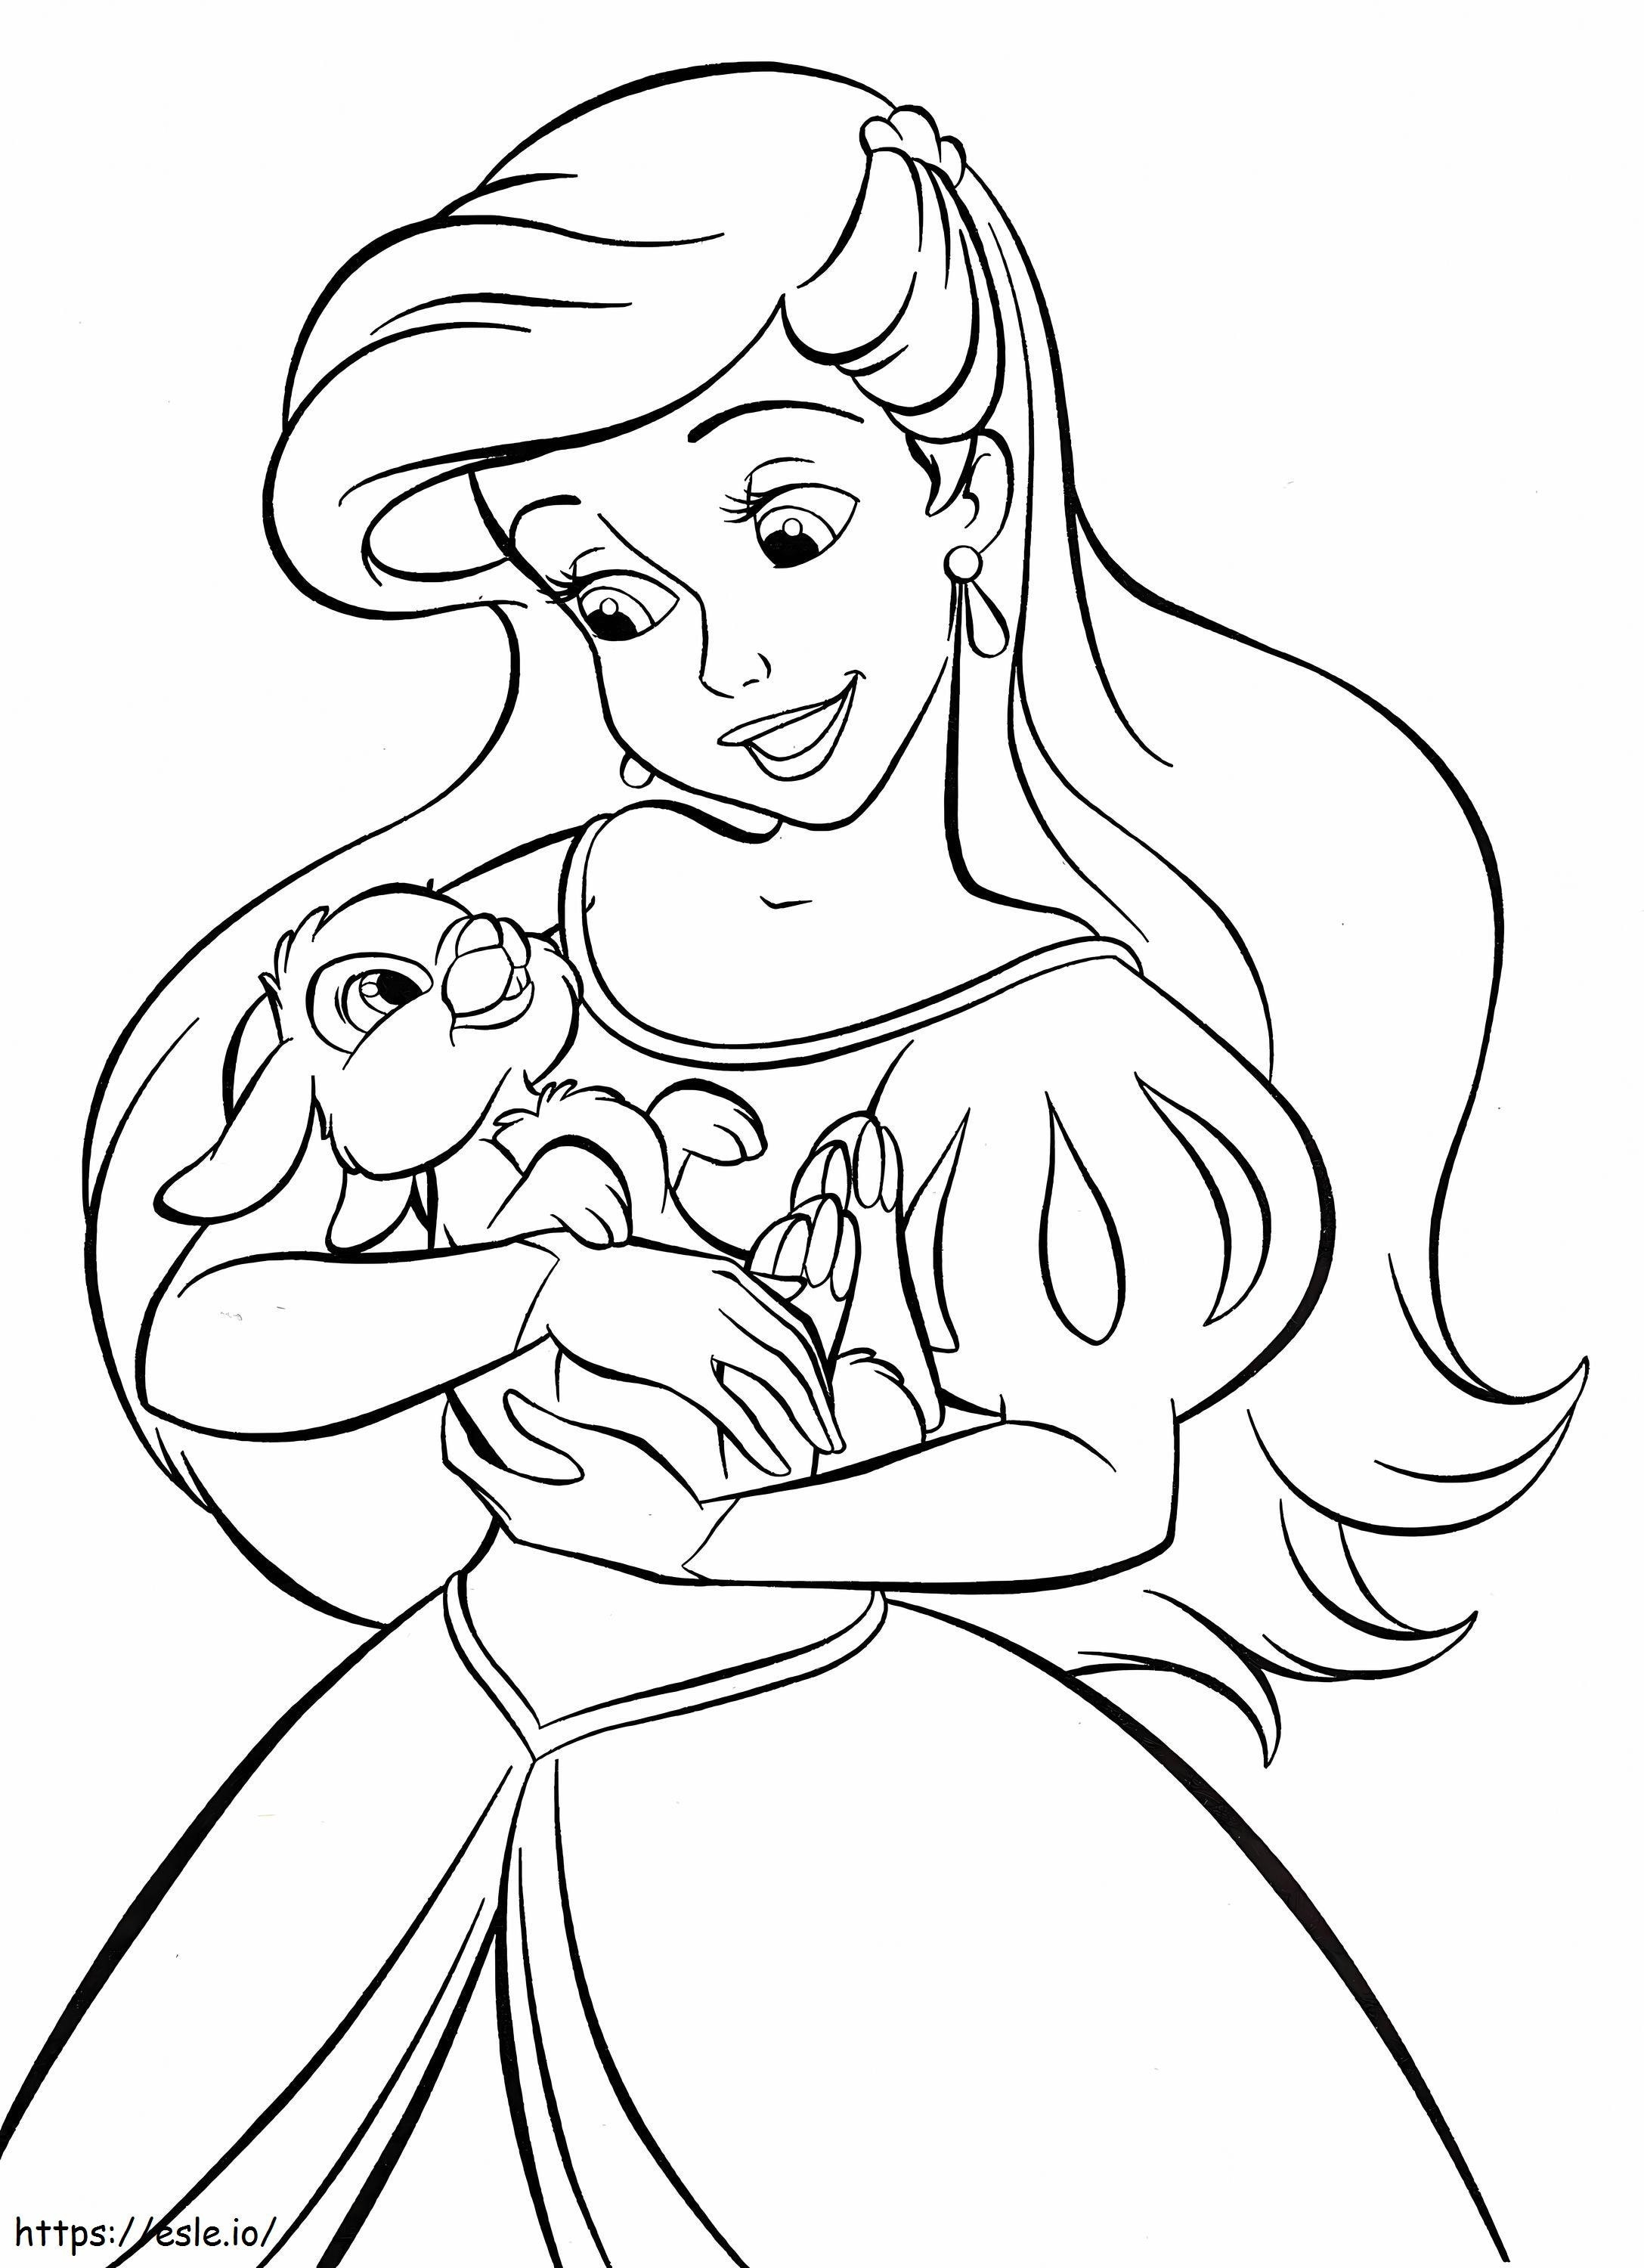 La principessa Disney Ariel con il coniglietto da colorare